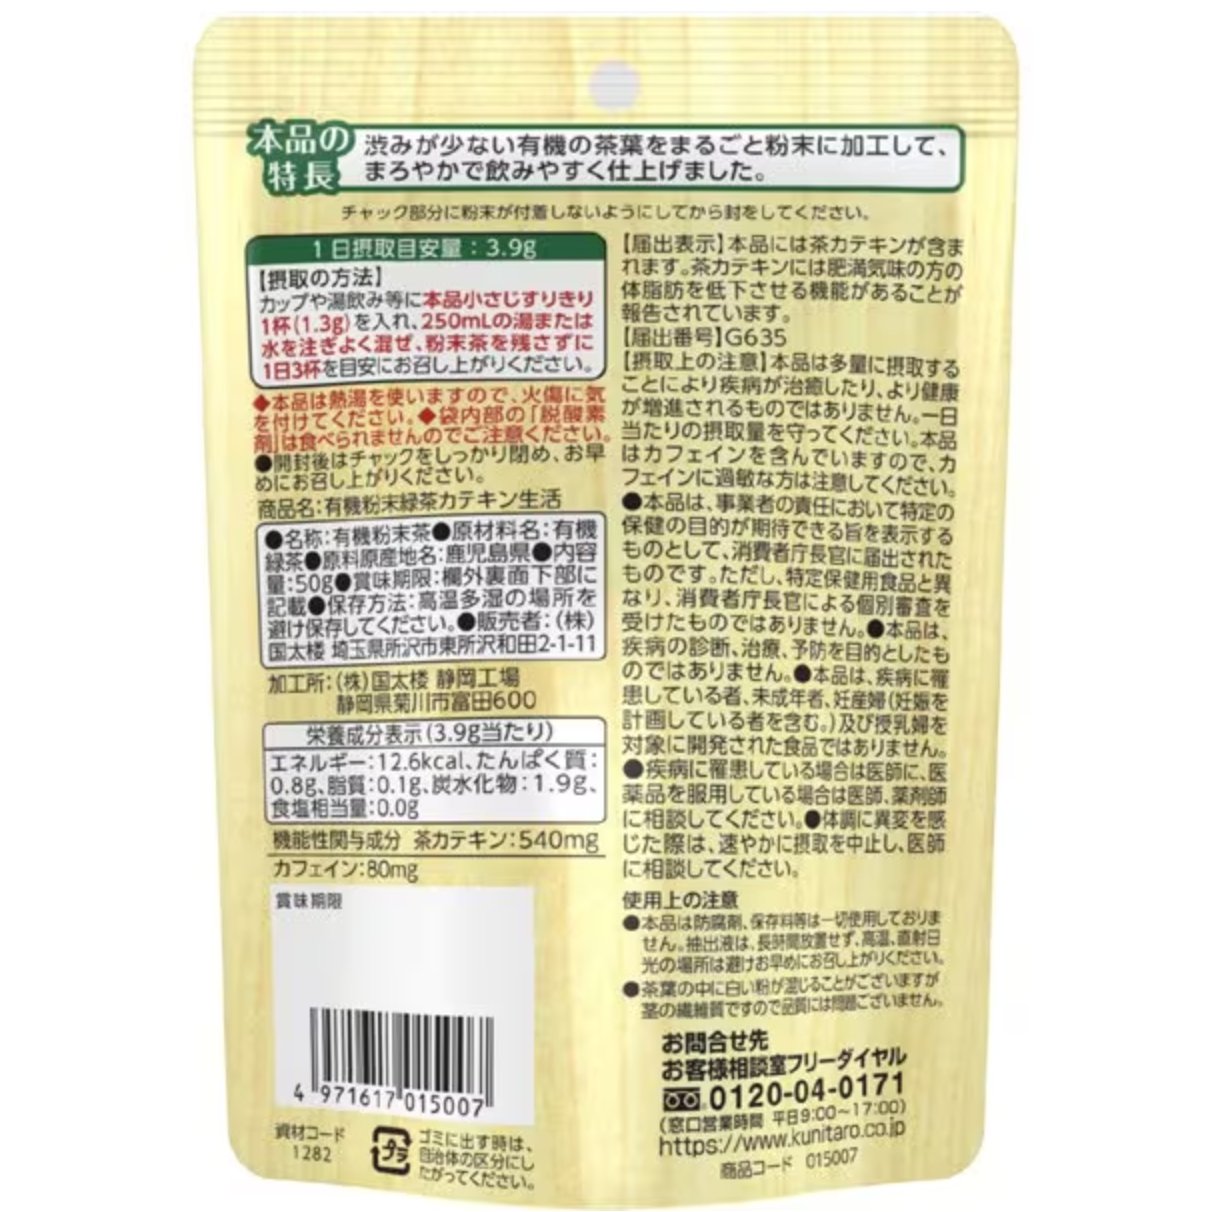 Kunitaro Organic Powdered Green Tea Catechin Life 50g - NihonMura